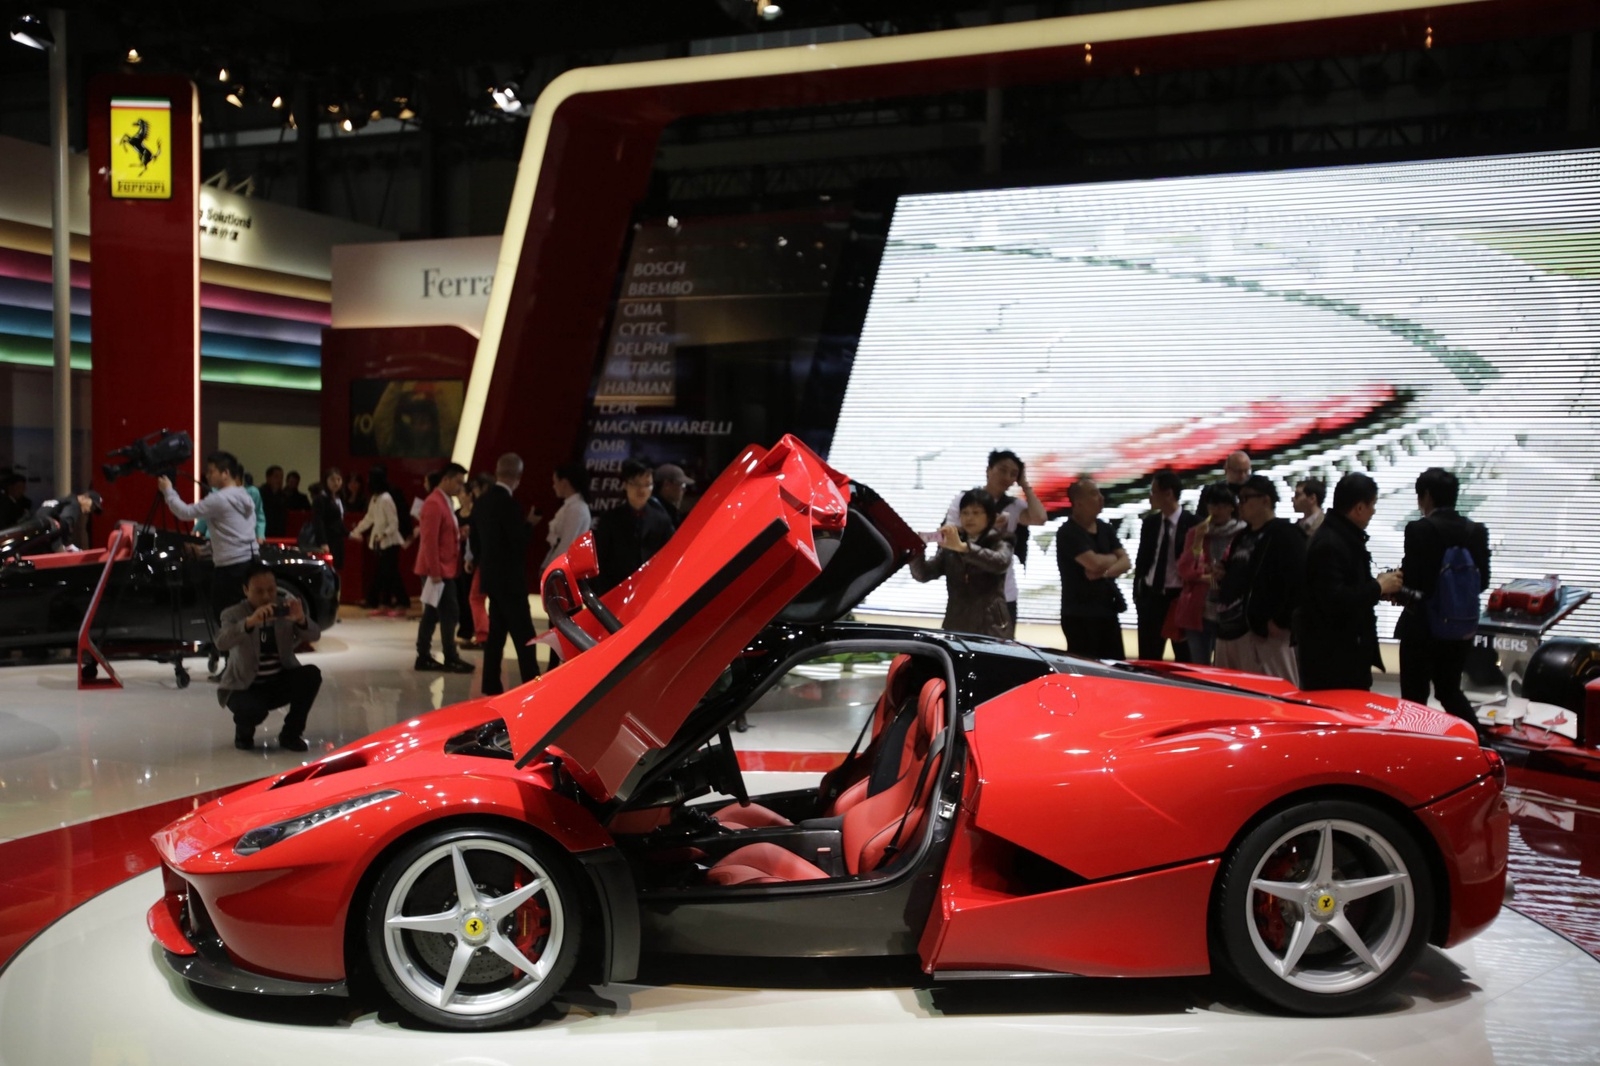 Tillverkarens första hybridmodell, LaFerrari, visades under 2013 upp på bland annat bilmässorna i Genève och Shanghai (där bilden är tagen).
Foto: Eugene Hoshiko/AP/TT